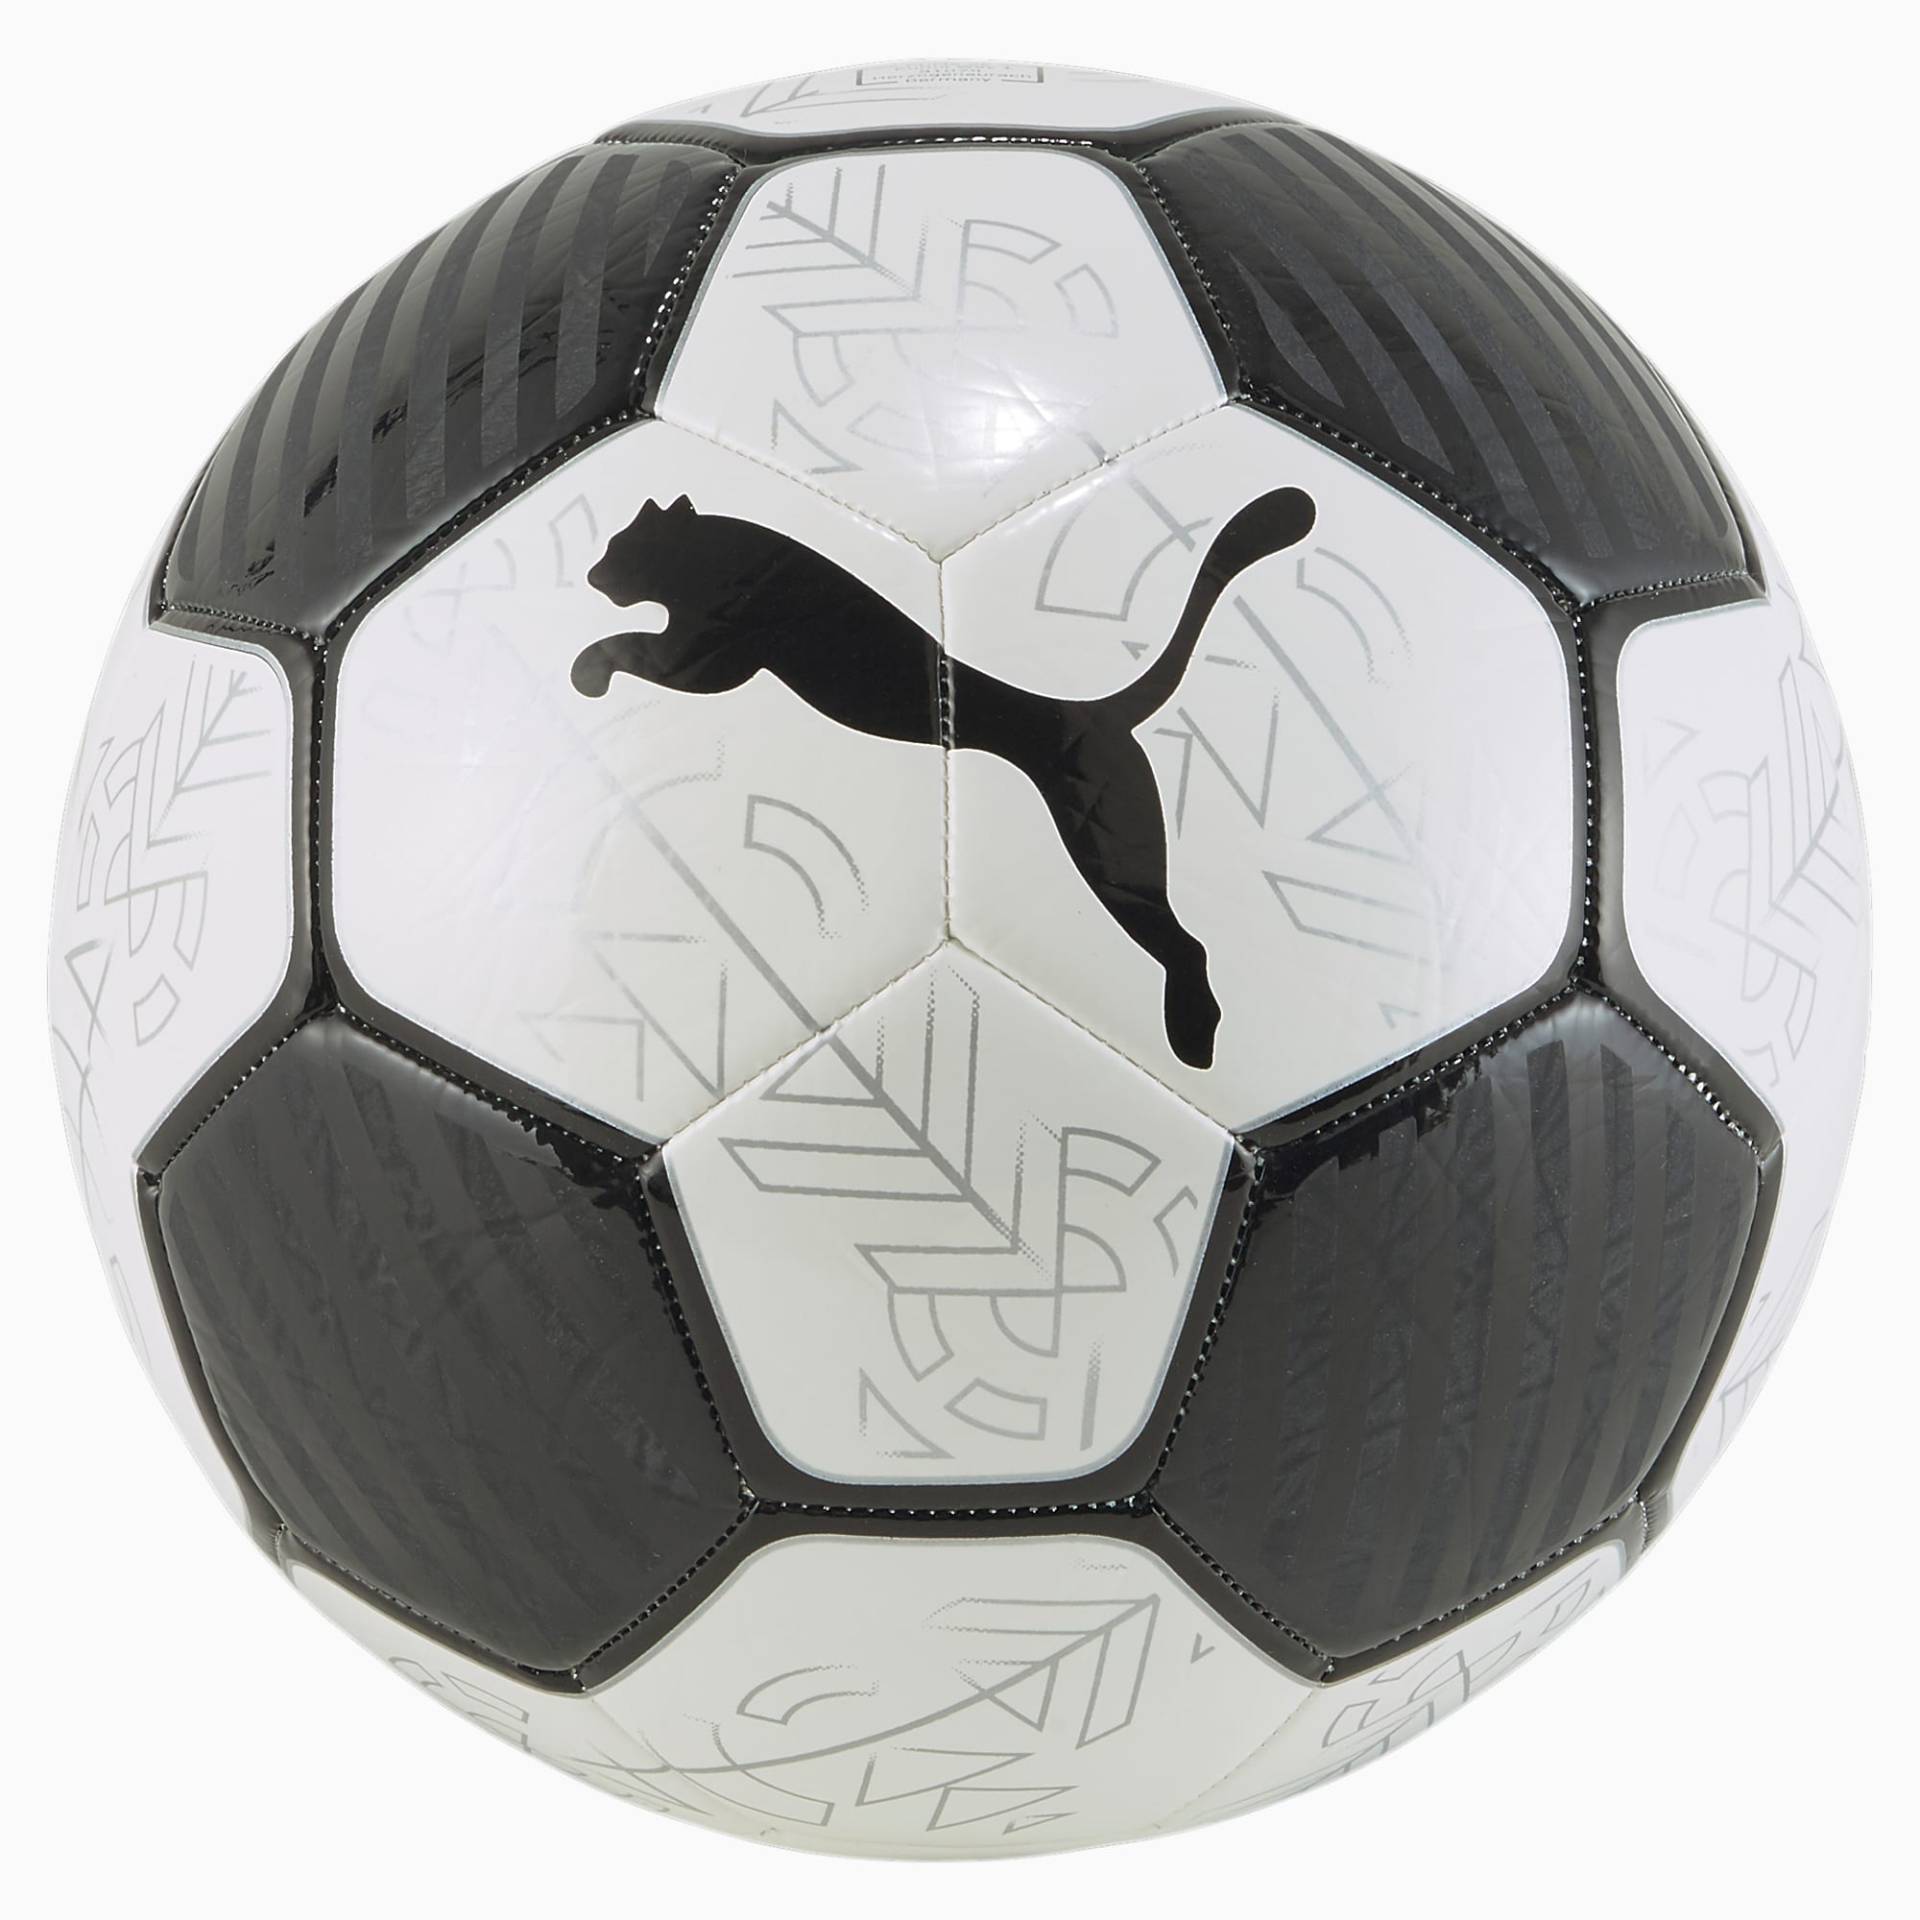 PUMA Prestige Fußball, Weiß/Schwarz, Größe: 3, Accessoires von PUMA